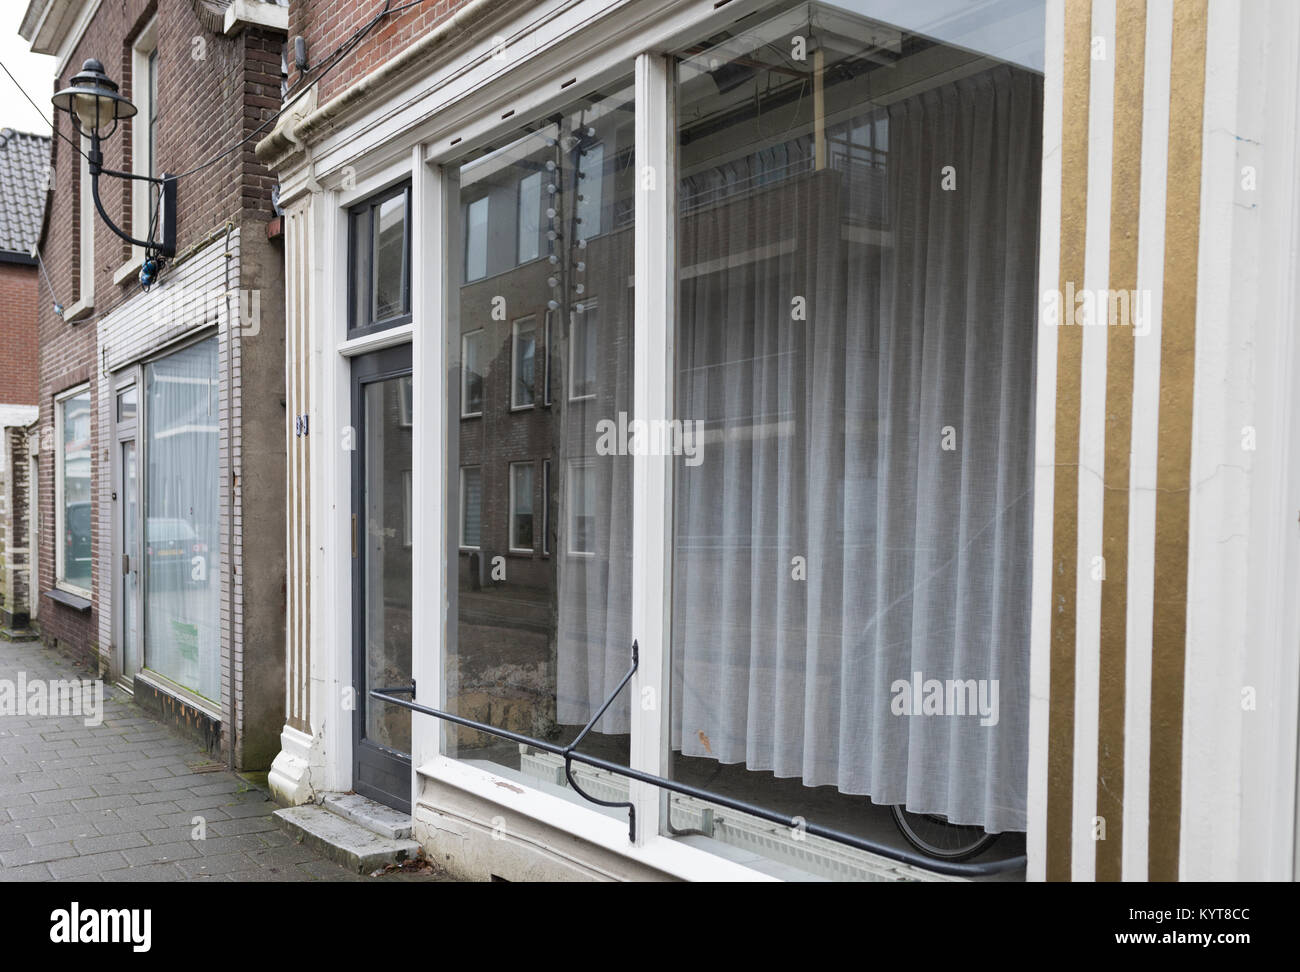 Atelier fermé avec vitrine dans rue commerçante de la ville de Coevorden, Pays-Bas Banque D'Images